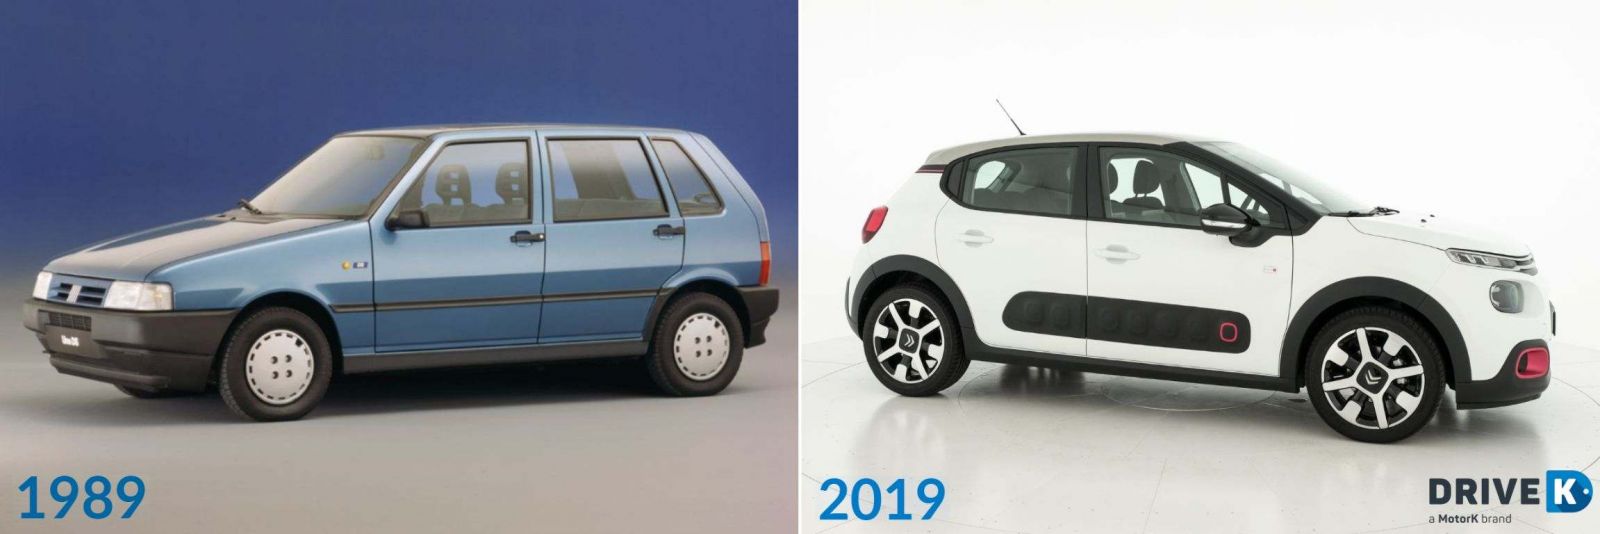 La ricerca di DriveK: ecco come sono cambiate le auto più richieste dagli italiani negli ultimi 30 anni